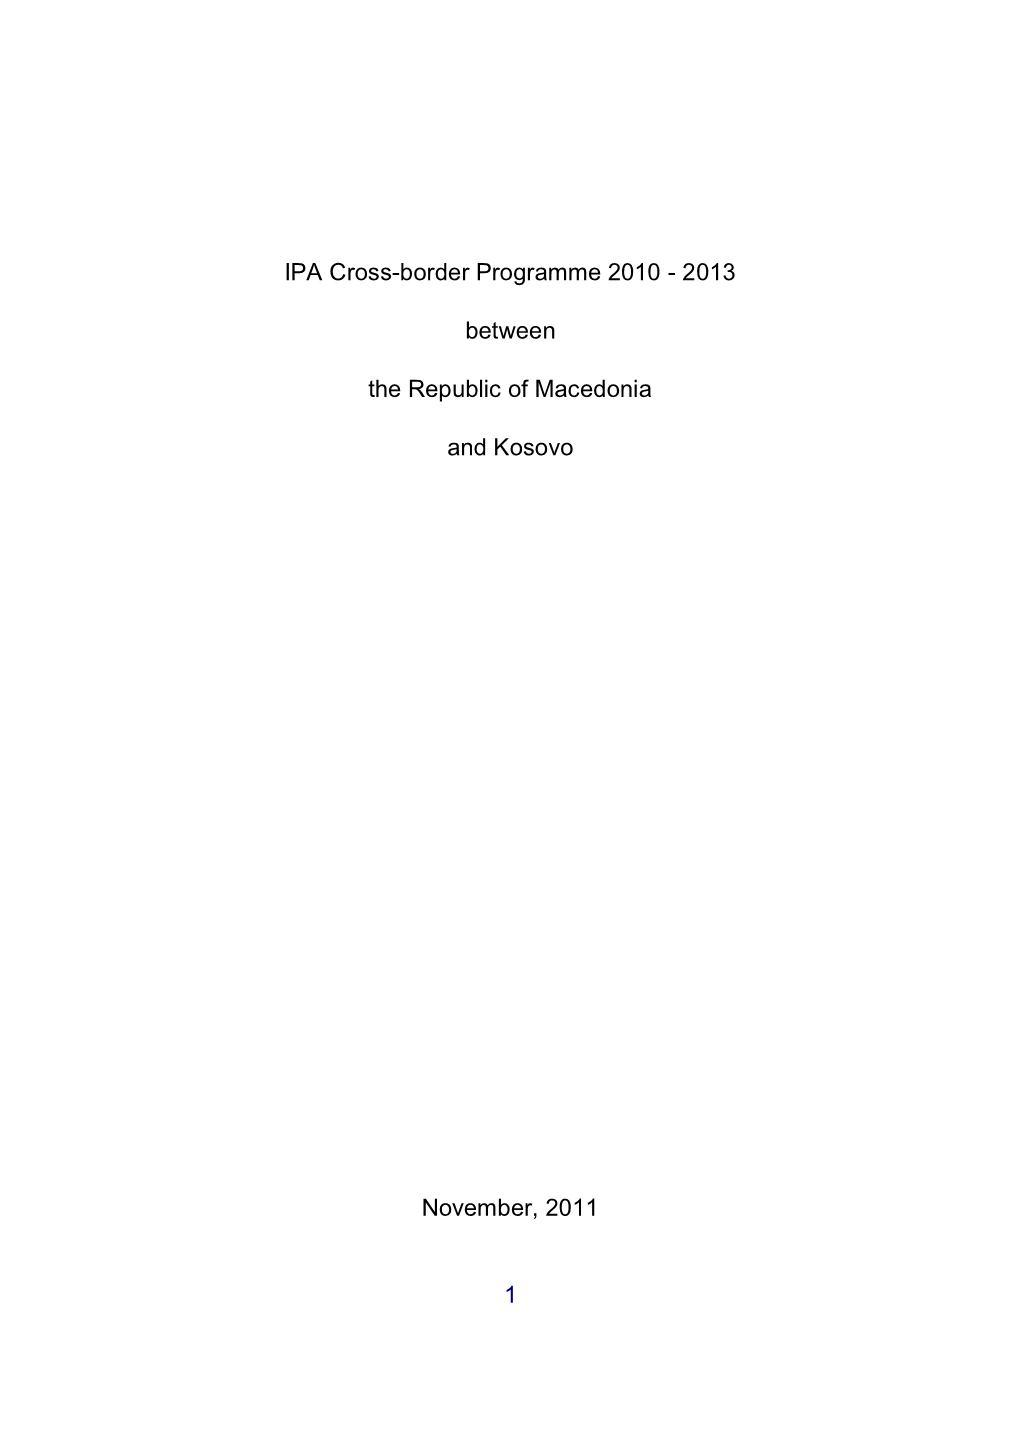 IPA Cross-Border Programme Between